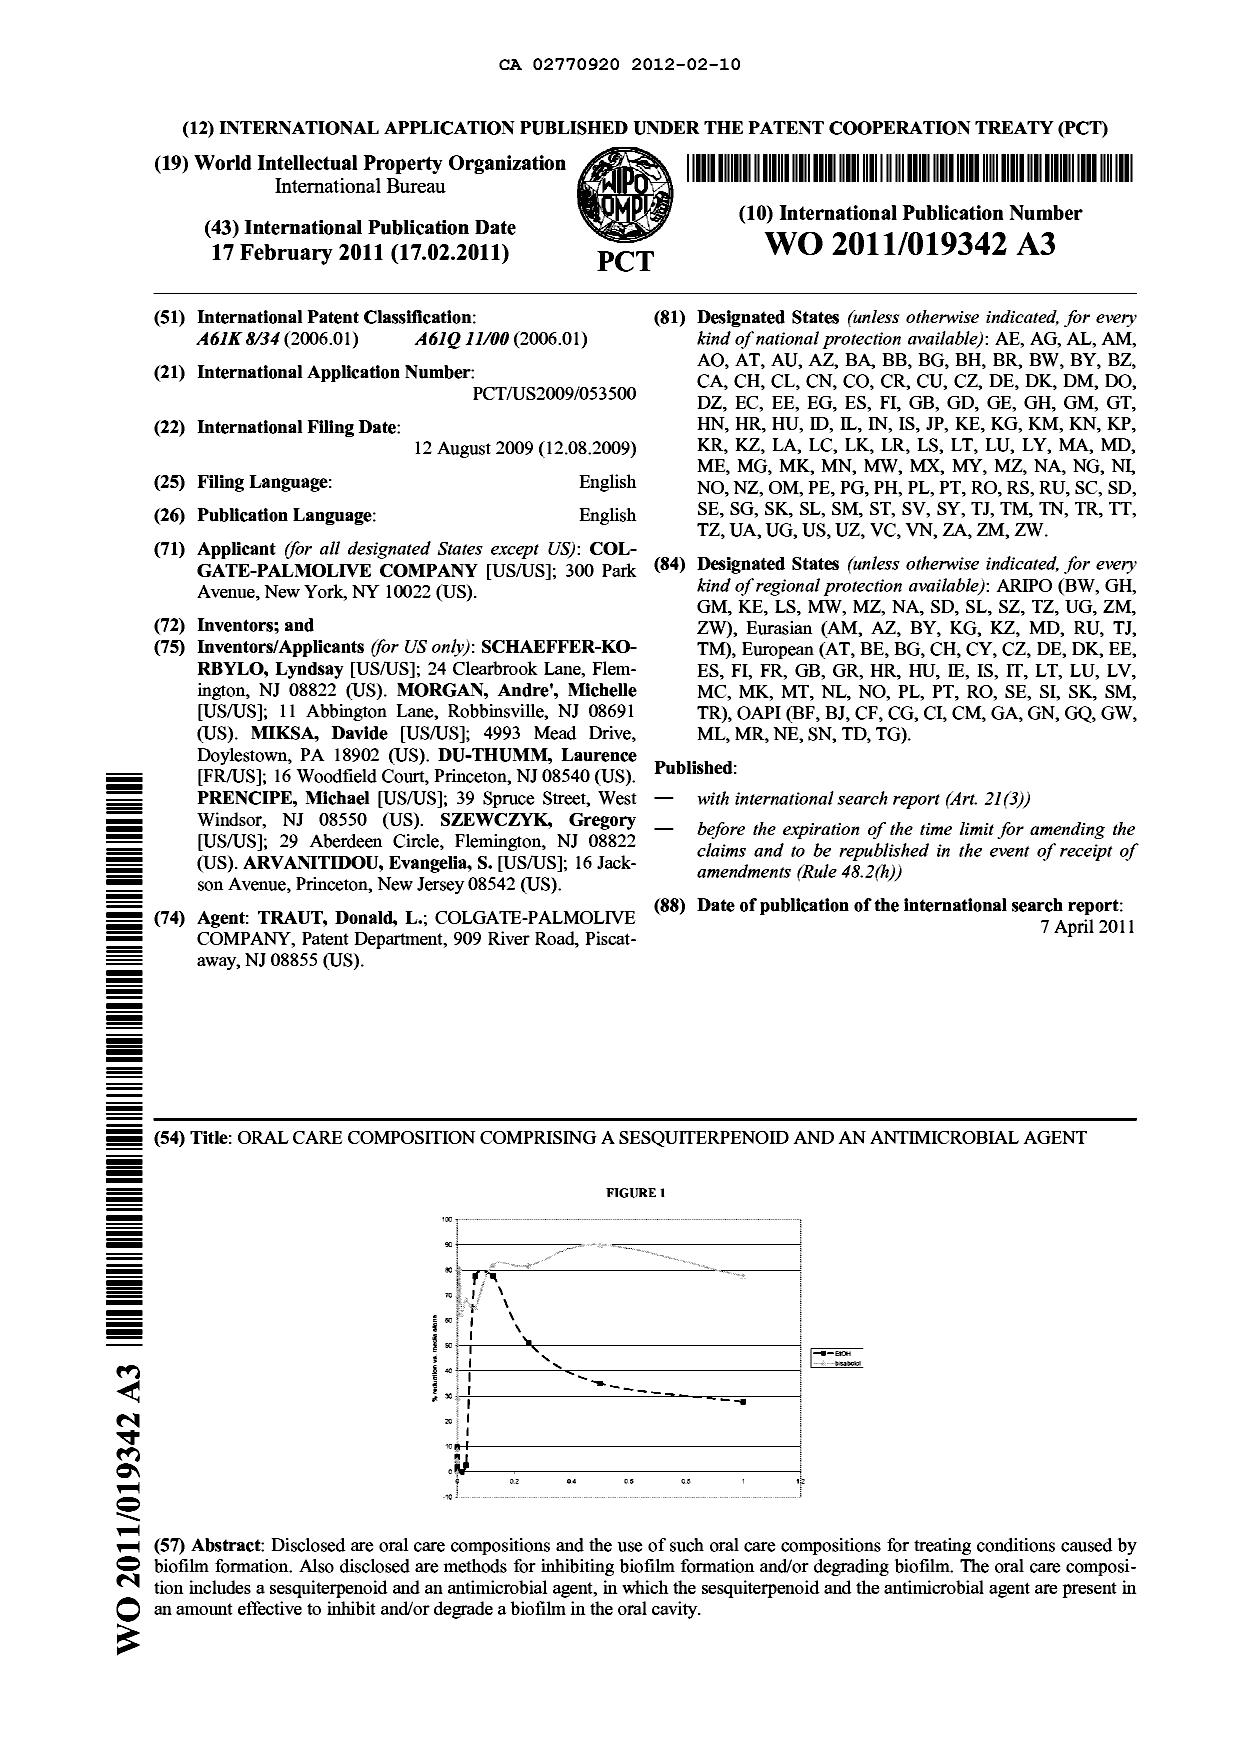 Document de brevet canadien 2770920. Abrégé 20120210. Image 1 de 1